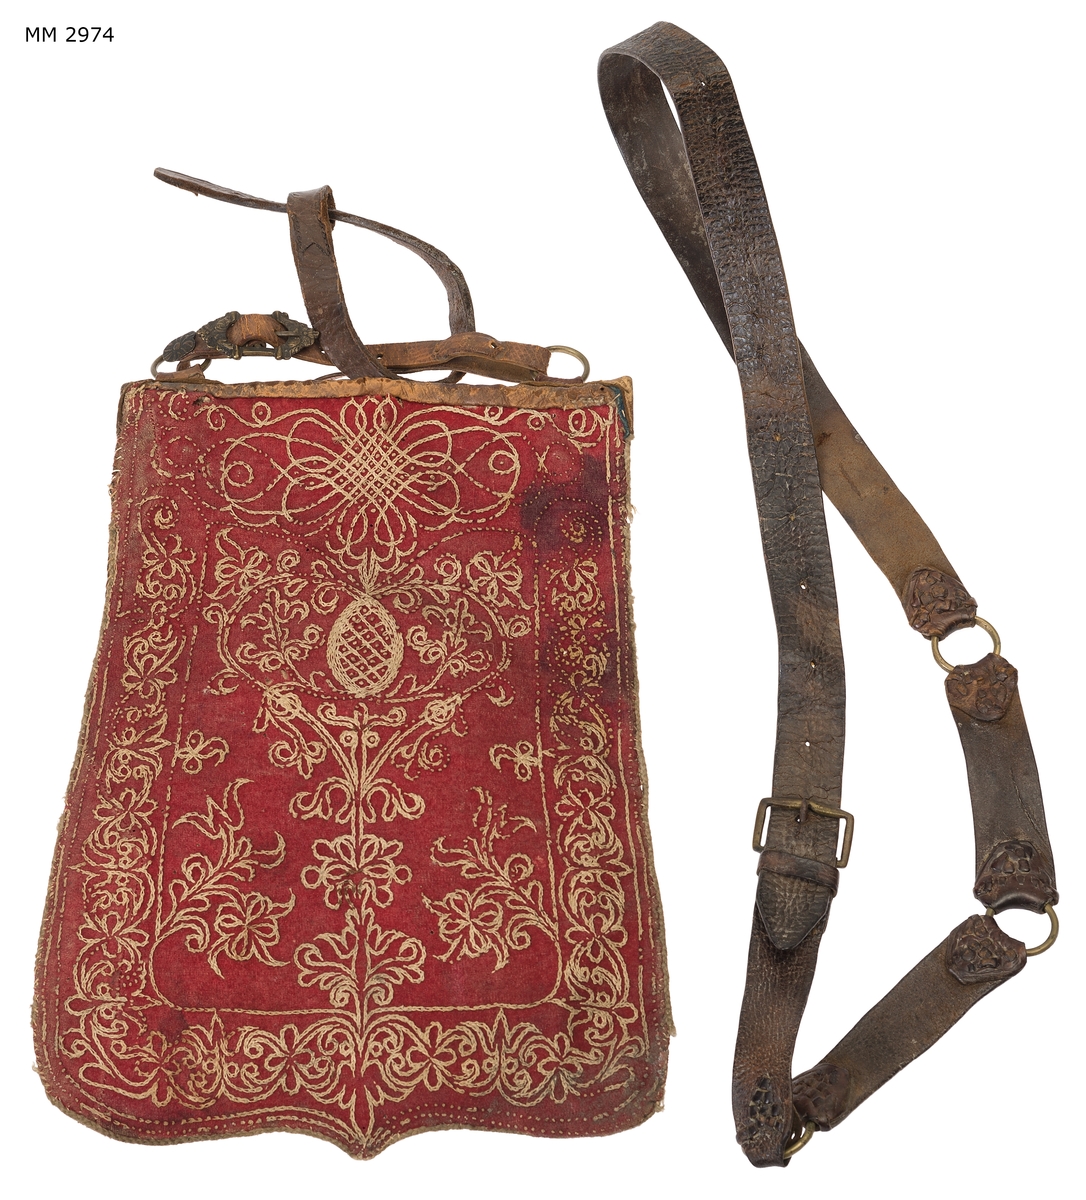 Sabeltaska med lädergehäng för preussisk officer. Av läder med framsidan klädd med rött broderat ylletyg.